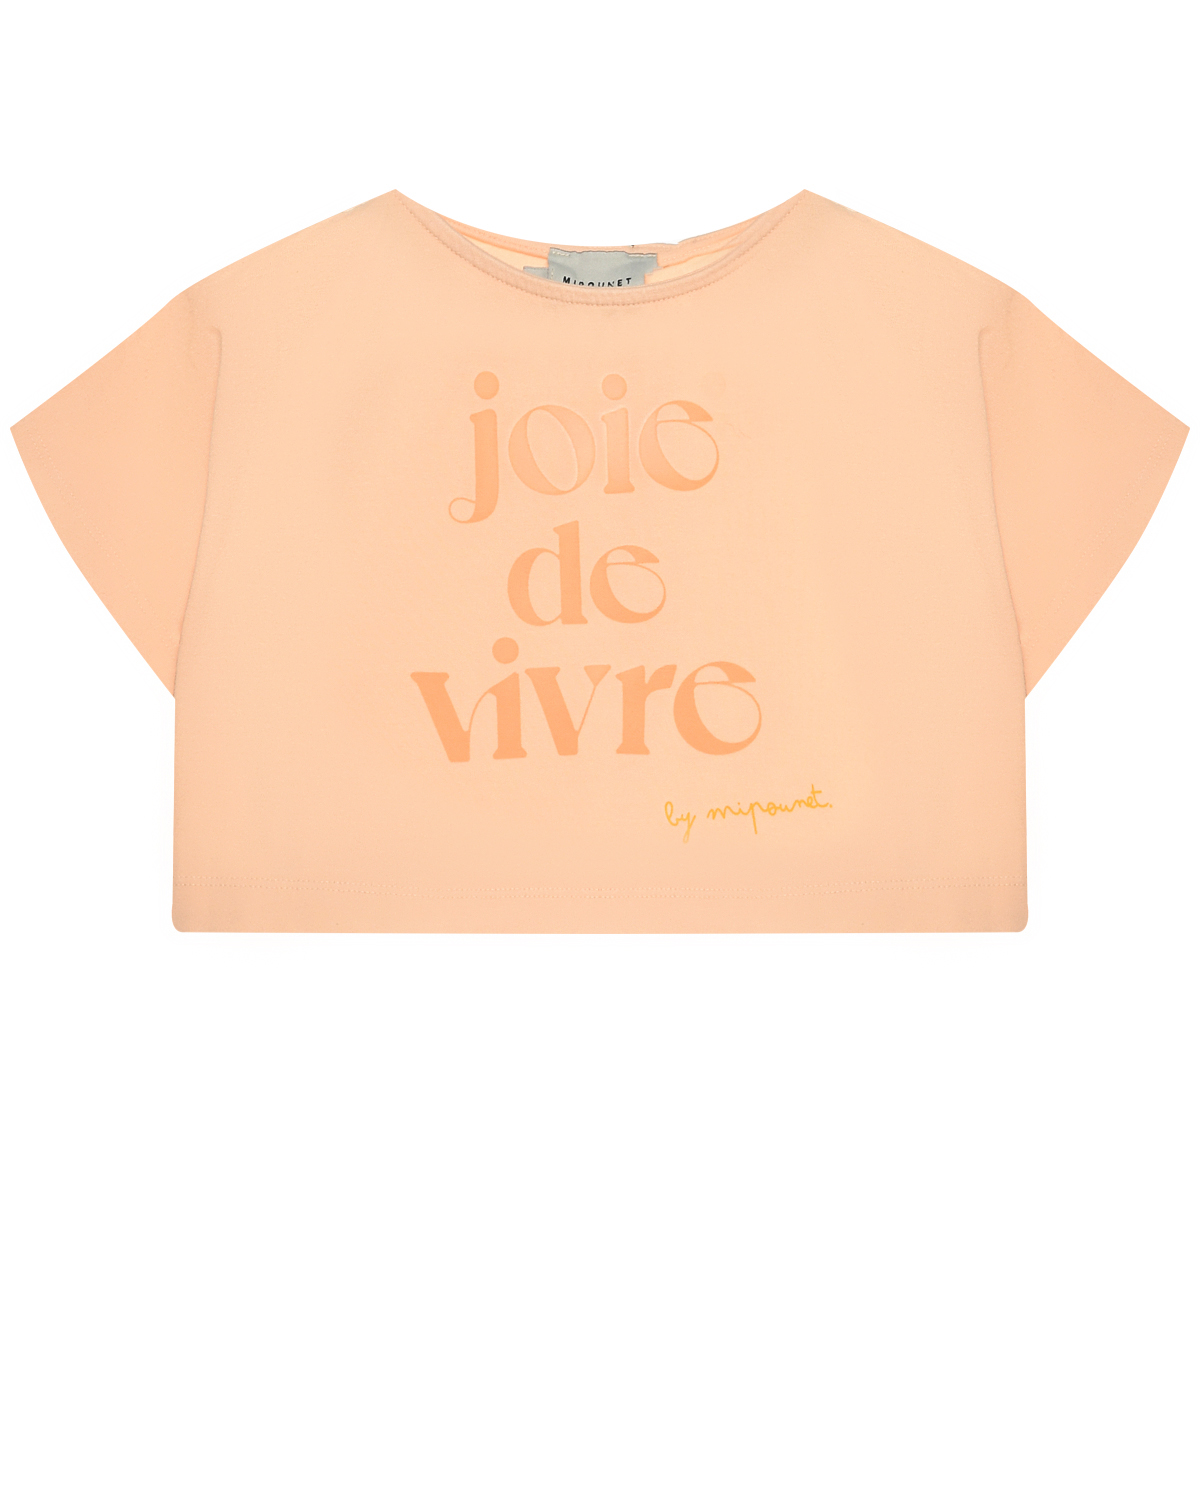 Укороченная футболка с притом "joie de vivre" Mipounet